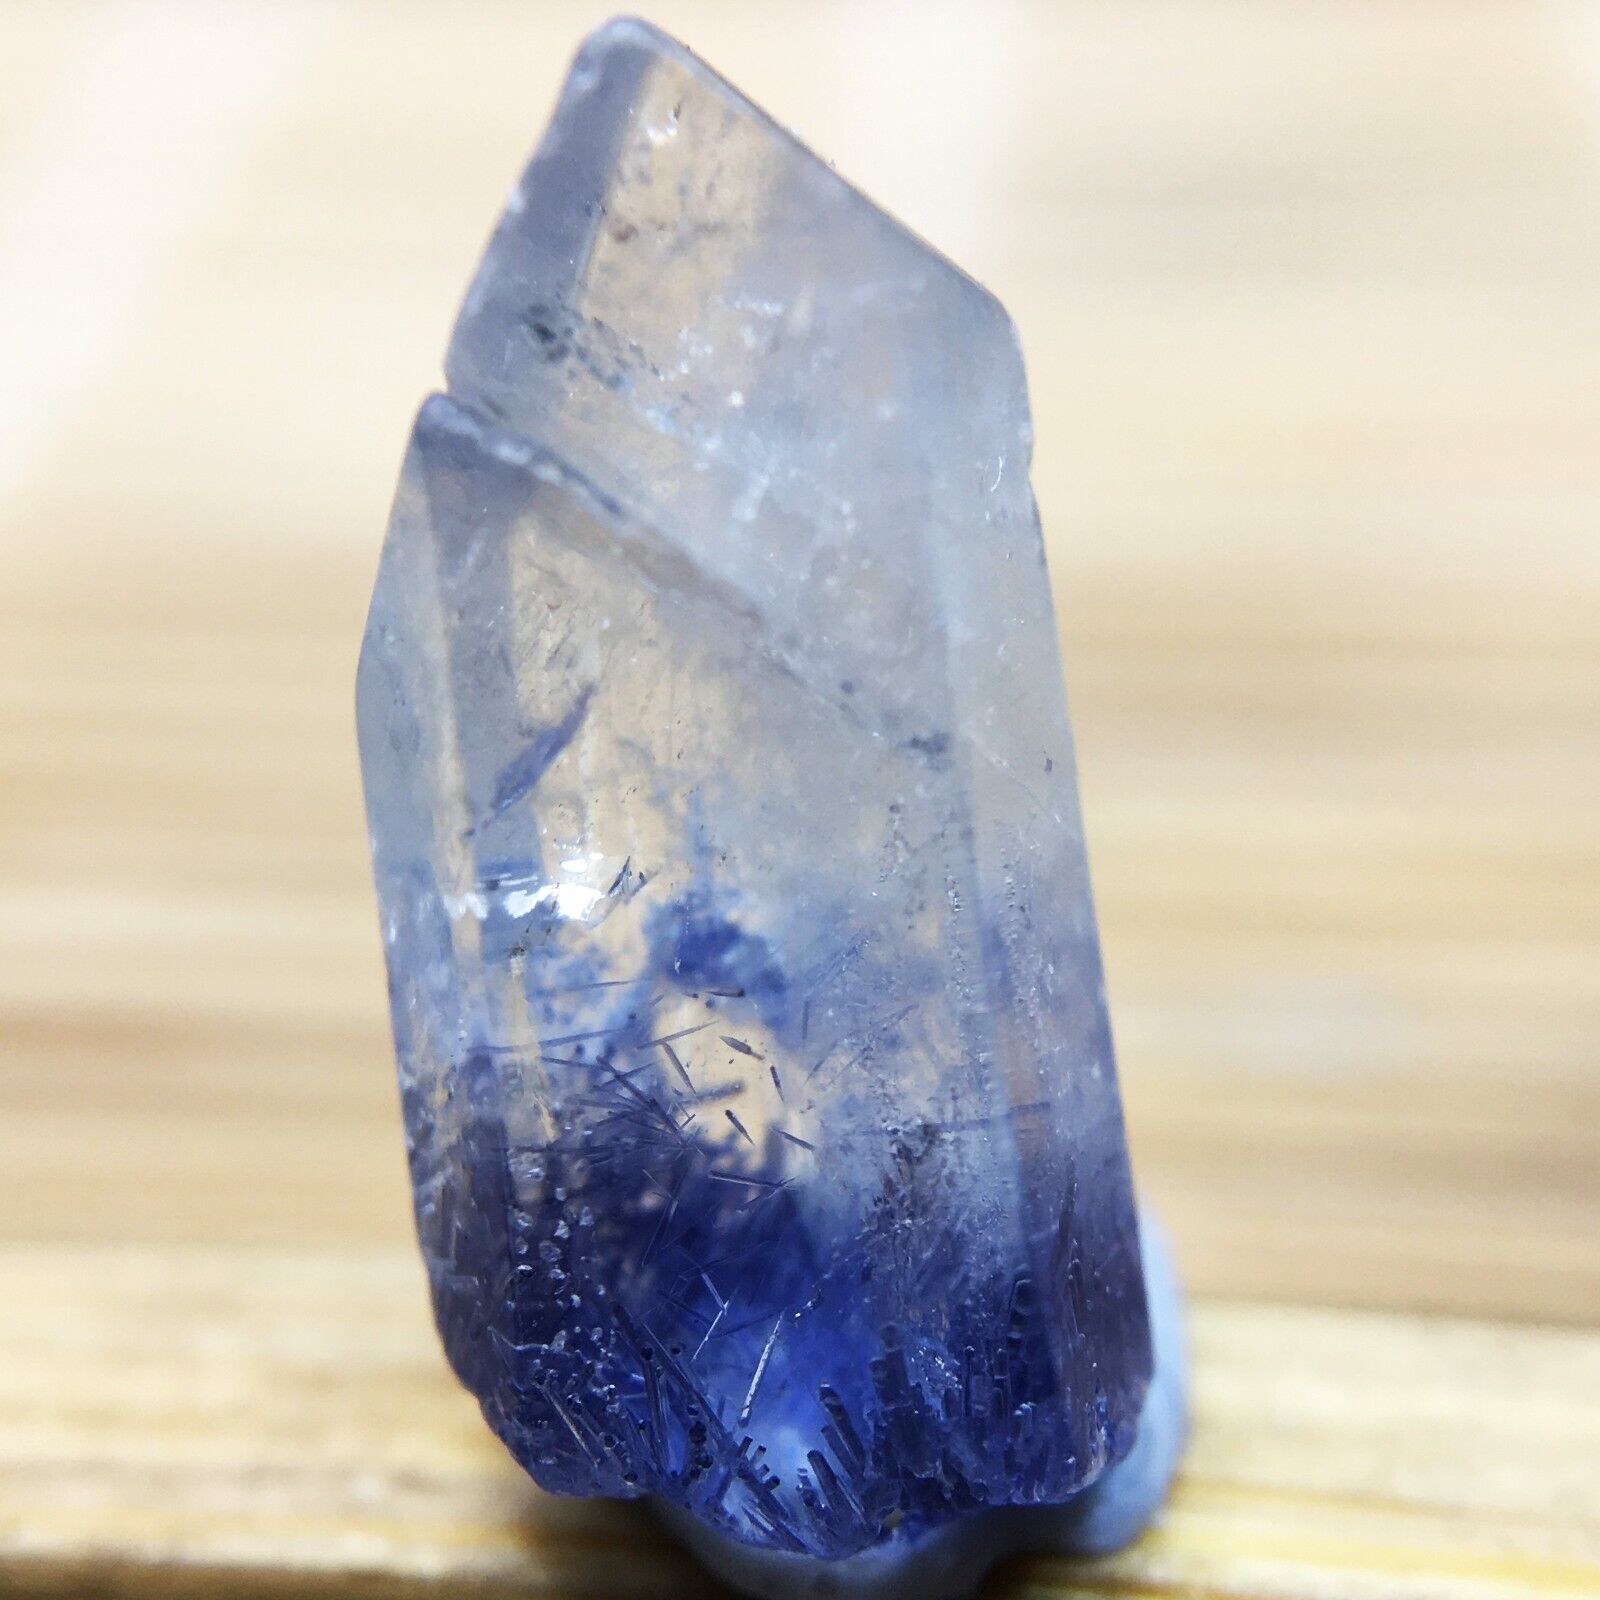 2.2Ct Very Rare NATURAL Beautiful Blue Dumortierite Quartz Crystal Specimen